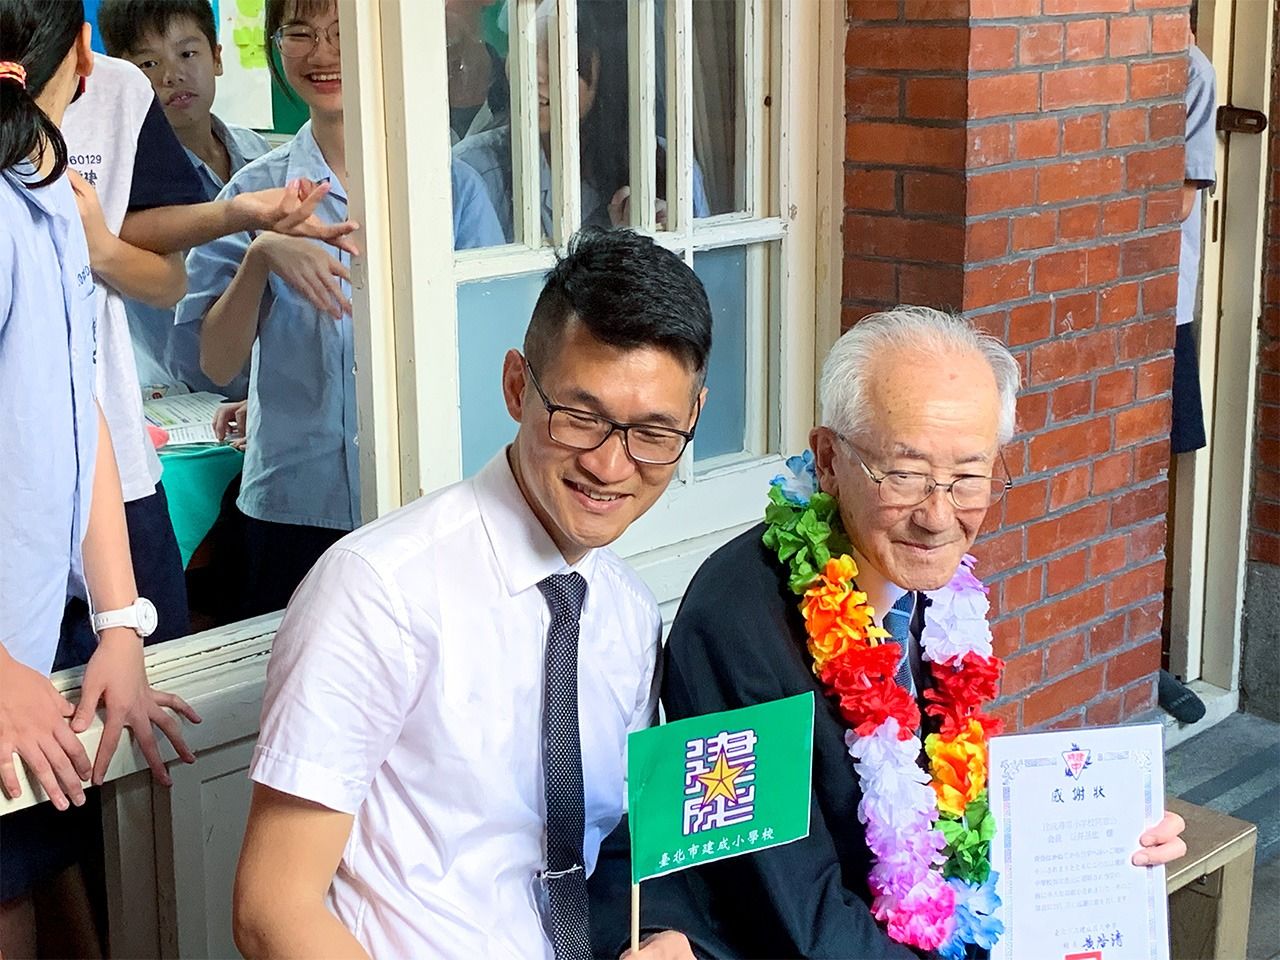 「先輩」の里帰りを温かく迎える台湾人——建成小学校創立100周年から見えたこと